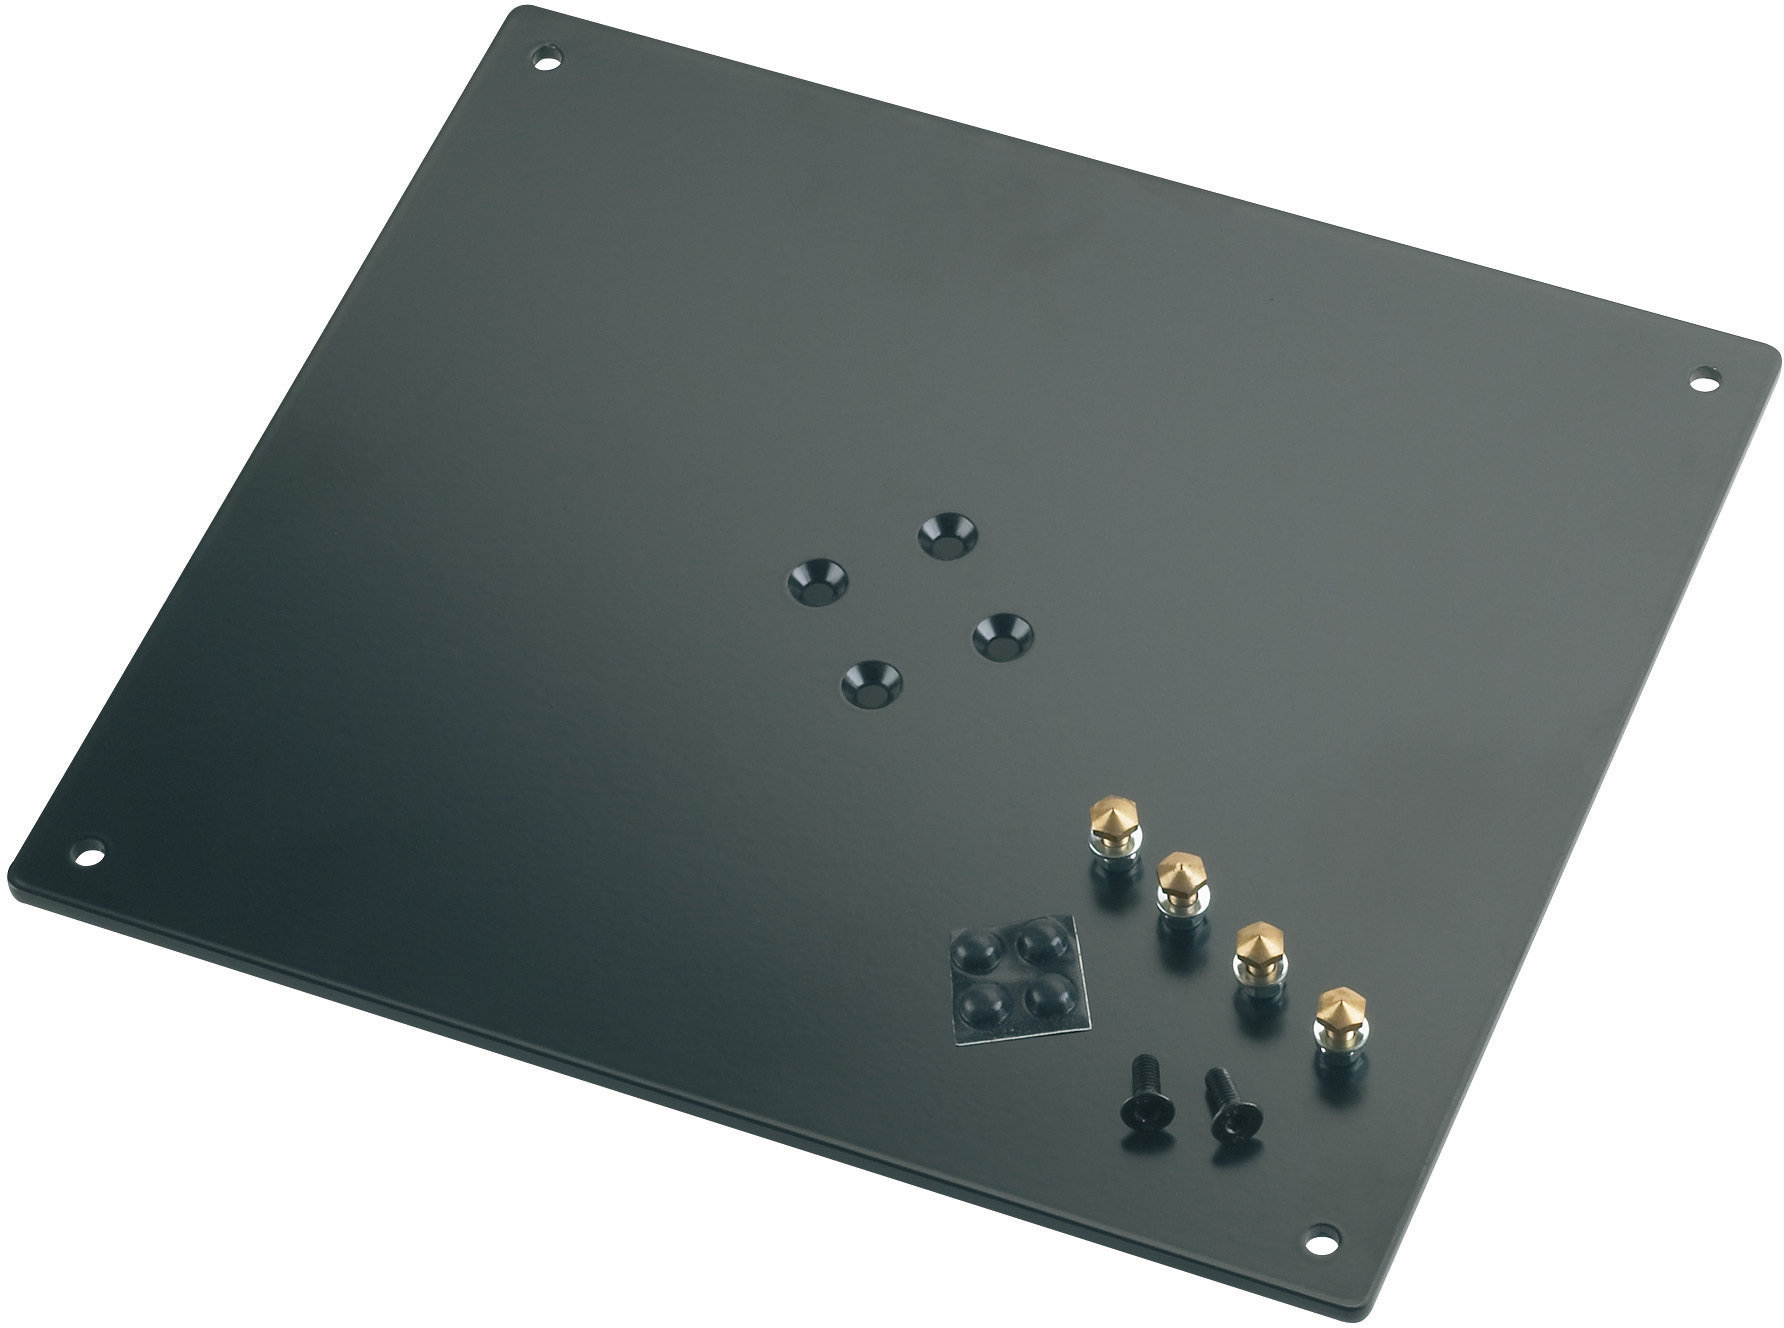 Standaard voor PC Konig & Meyer 26792-032 Bearing Plate Structured Black